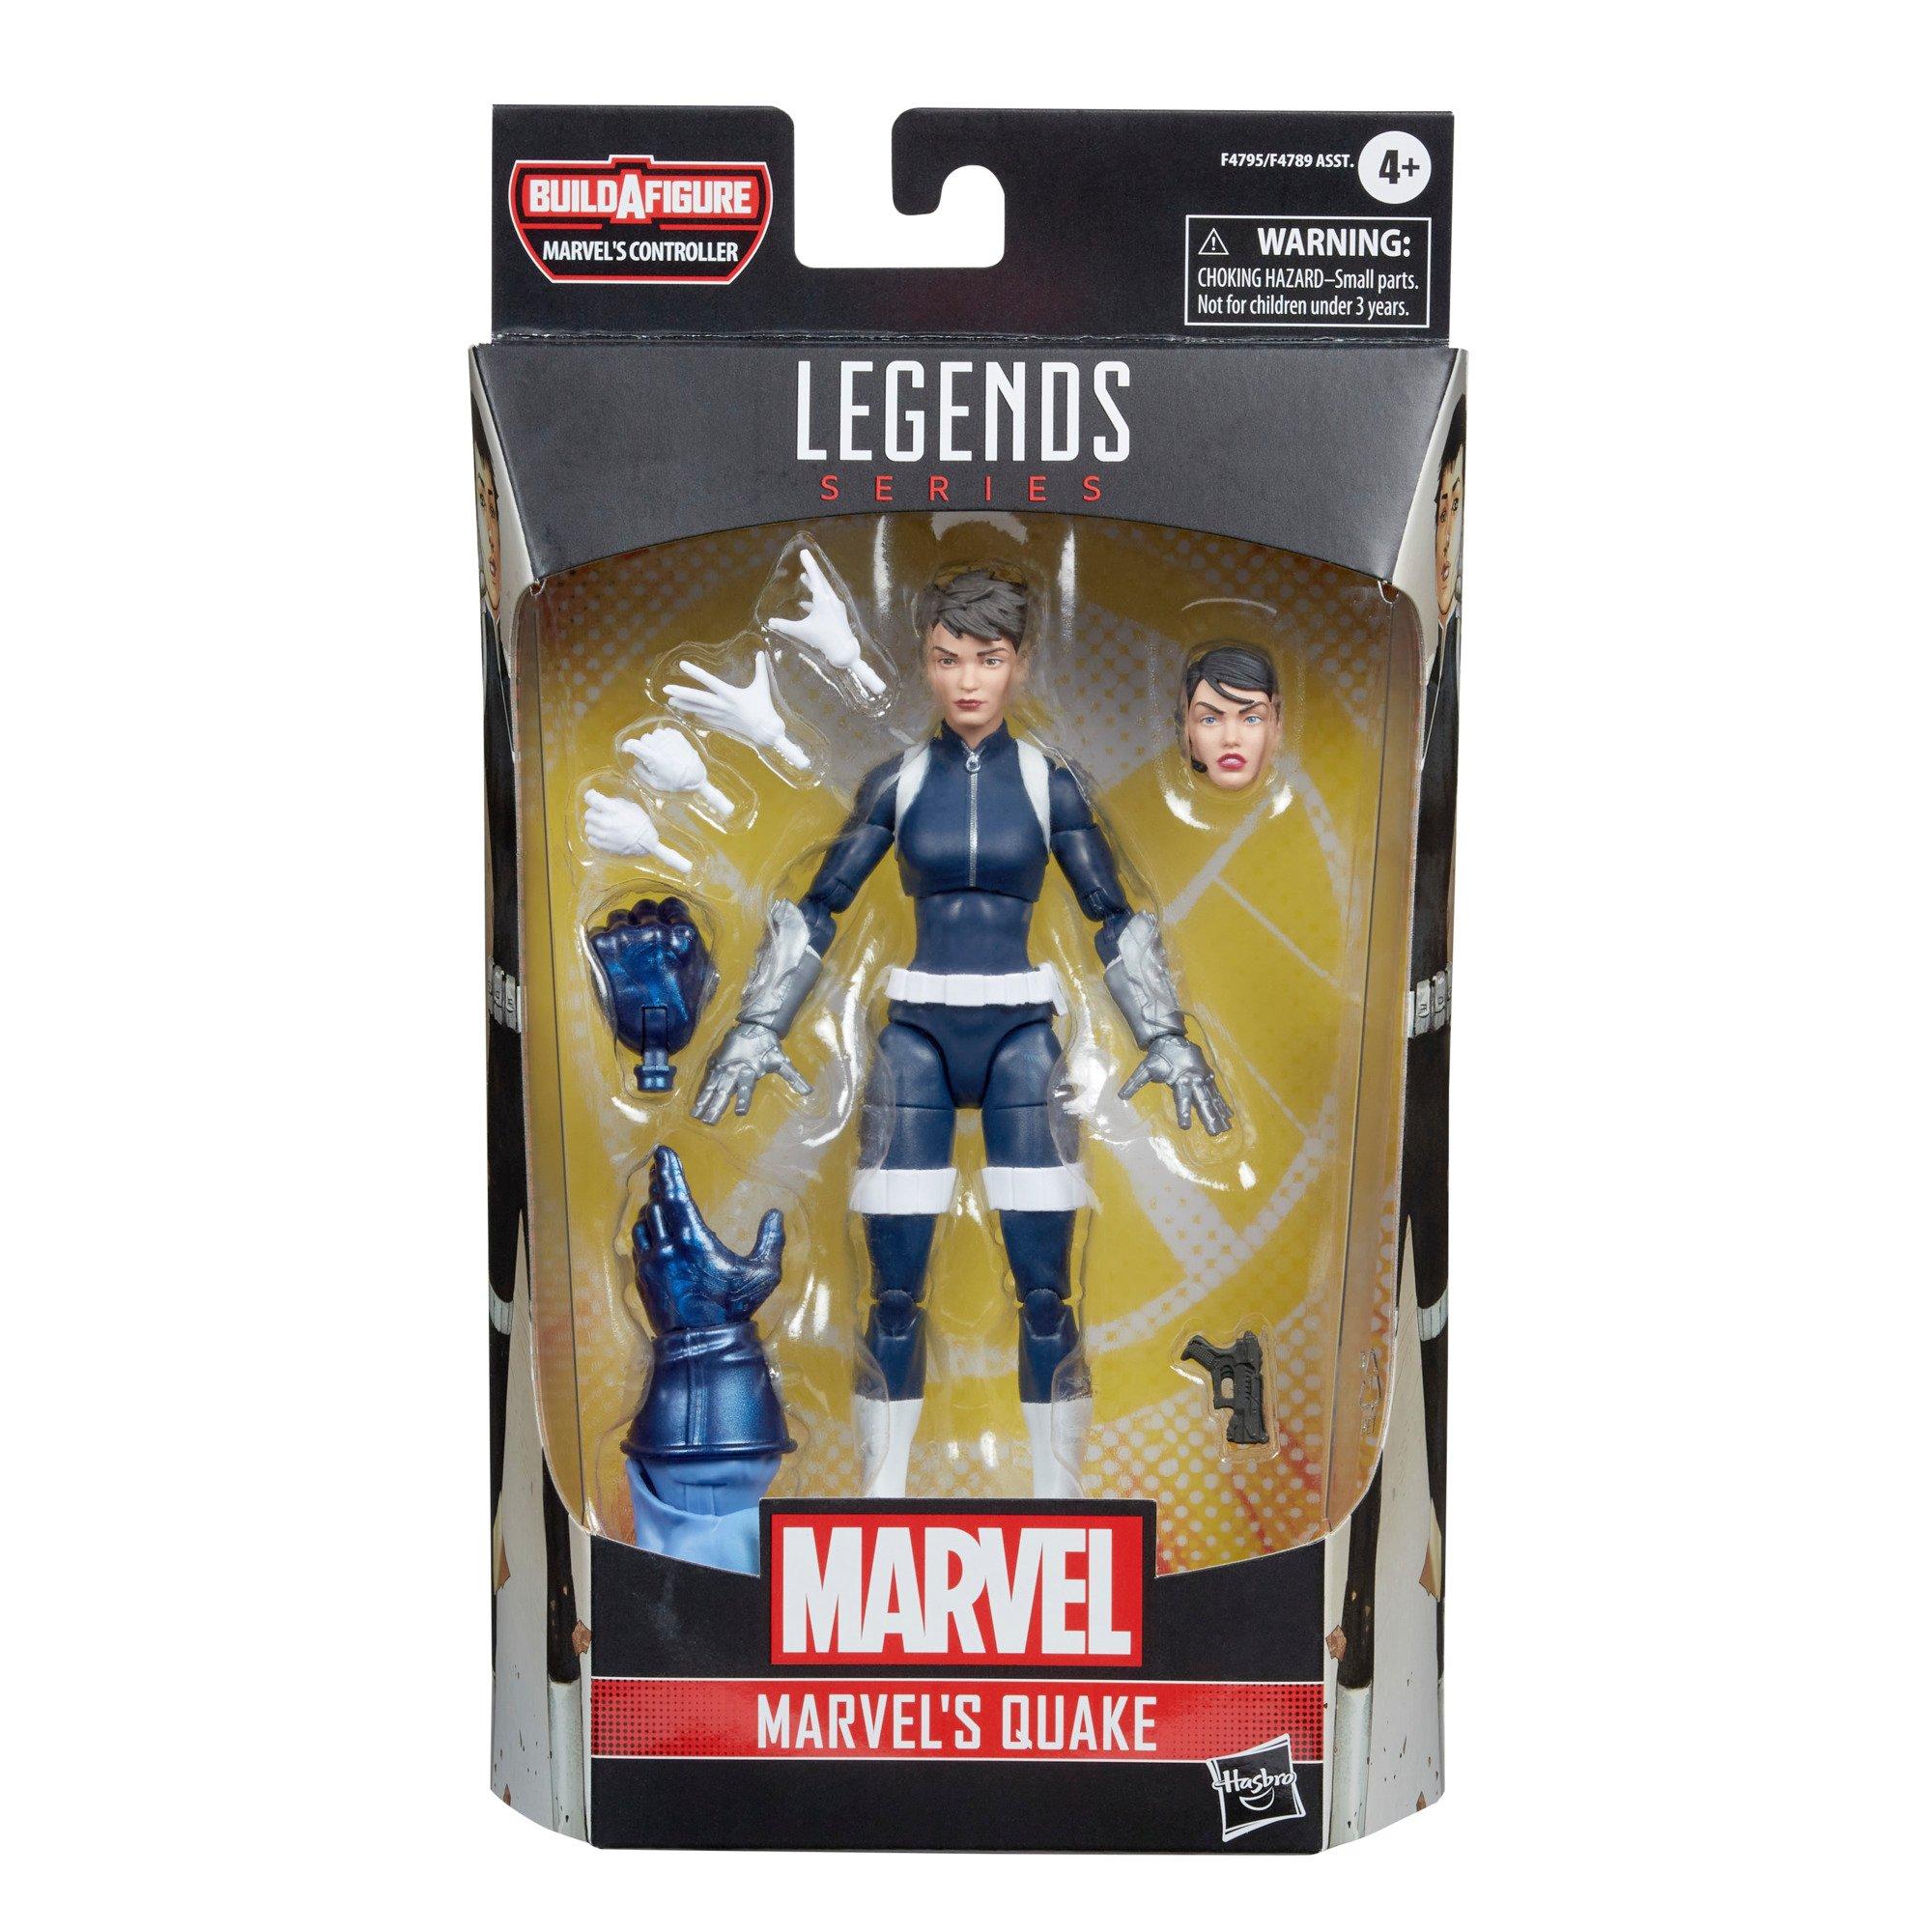 Marvel Legends Series Quake Secret Warriors Comics Action Figure 6-inch Collectible Toy 5 Accessories 2 Build-A-Figure Parts 